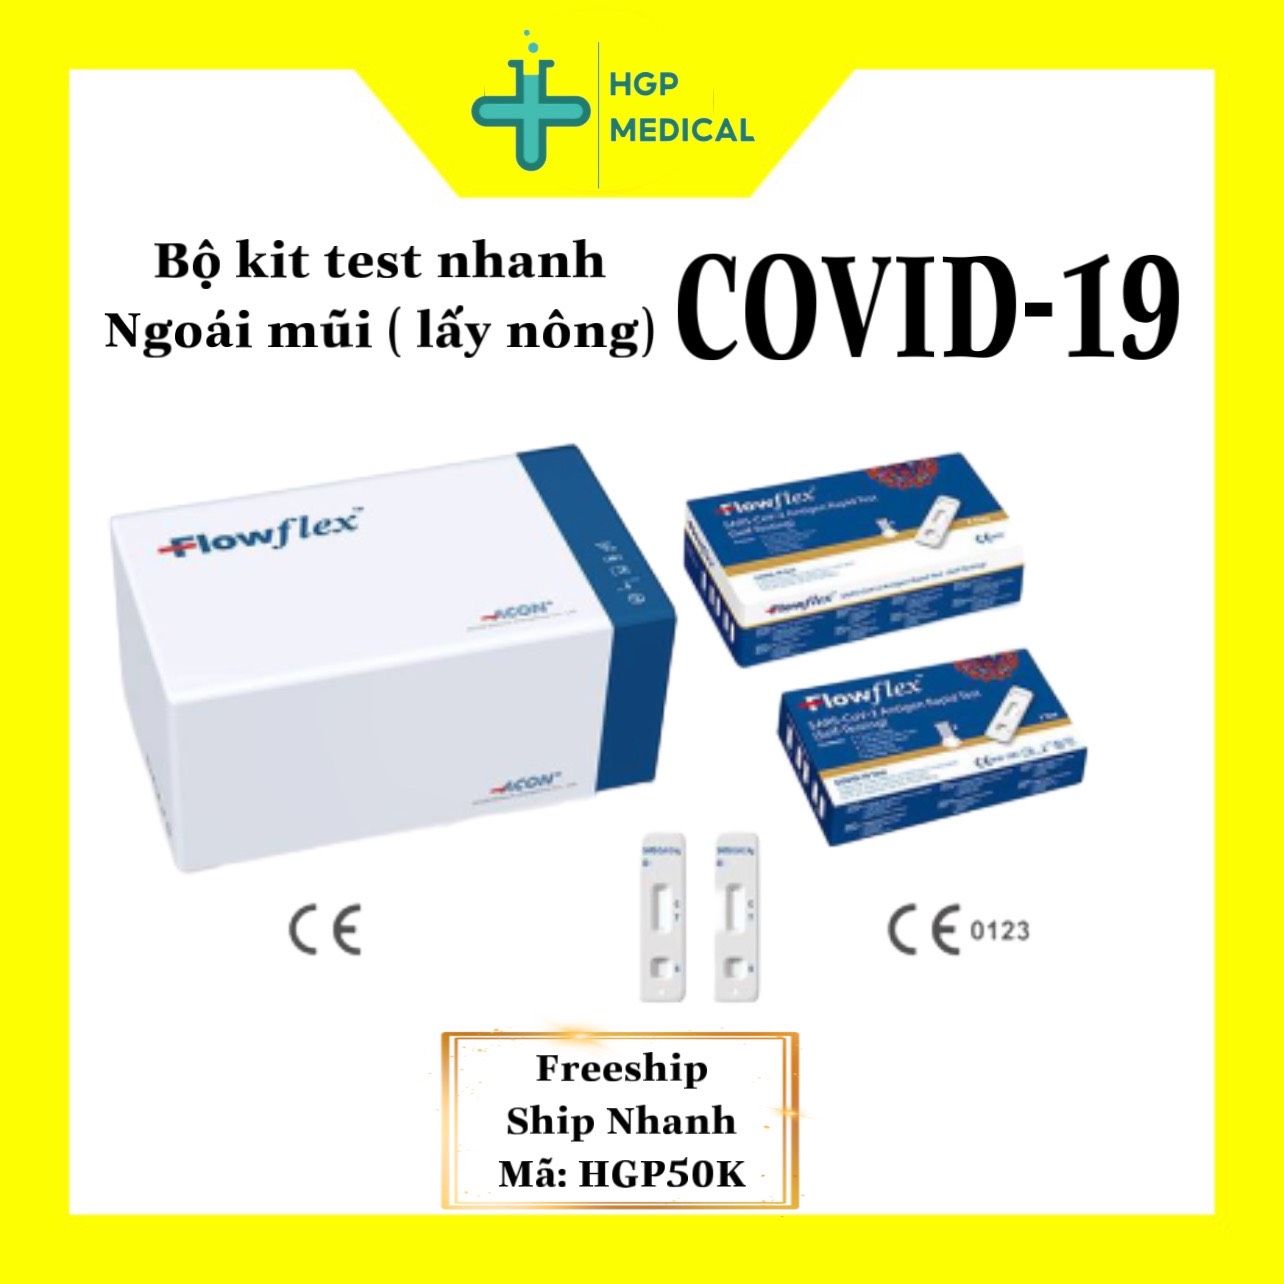 HCM Bộ kit FLOWFLEX ACON MỸ test nhanh COVID19 tại nhà, nhập chính hãng được BYT công nhận xuất VAT khi khách yêu cầu - 10 bộ KIT